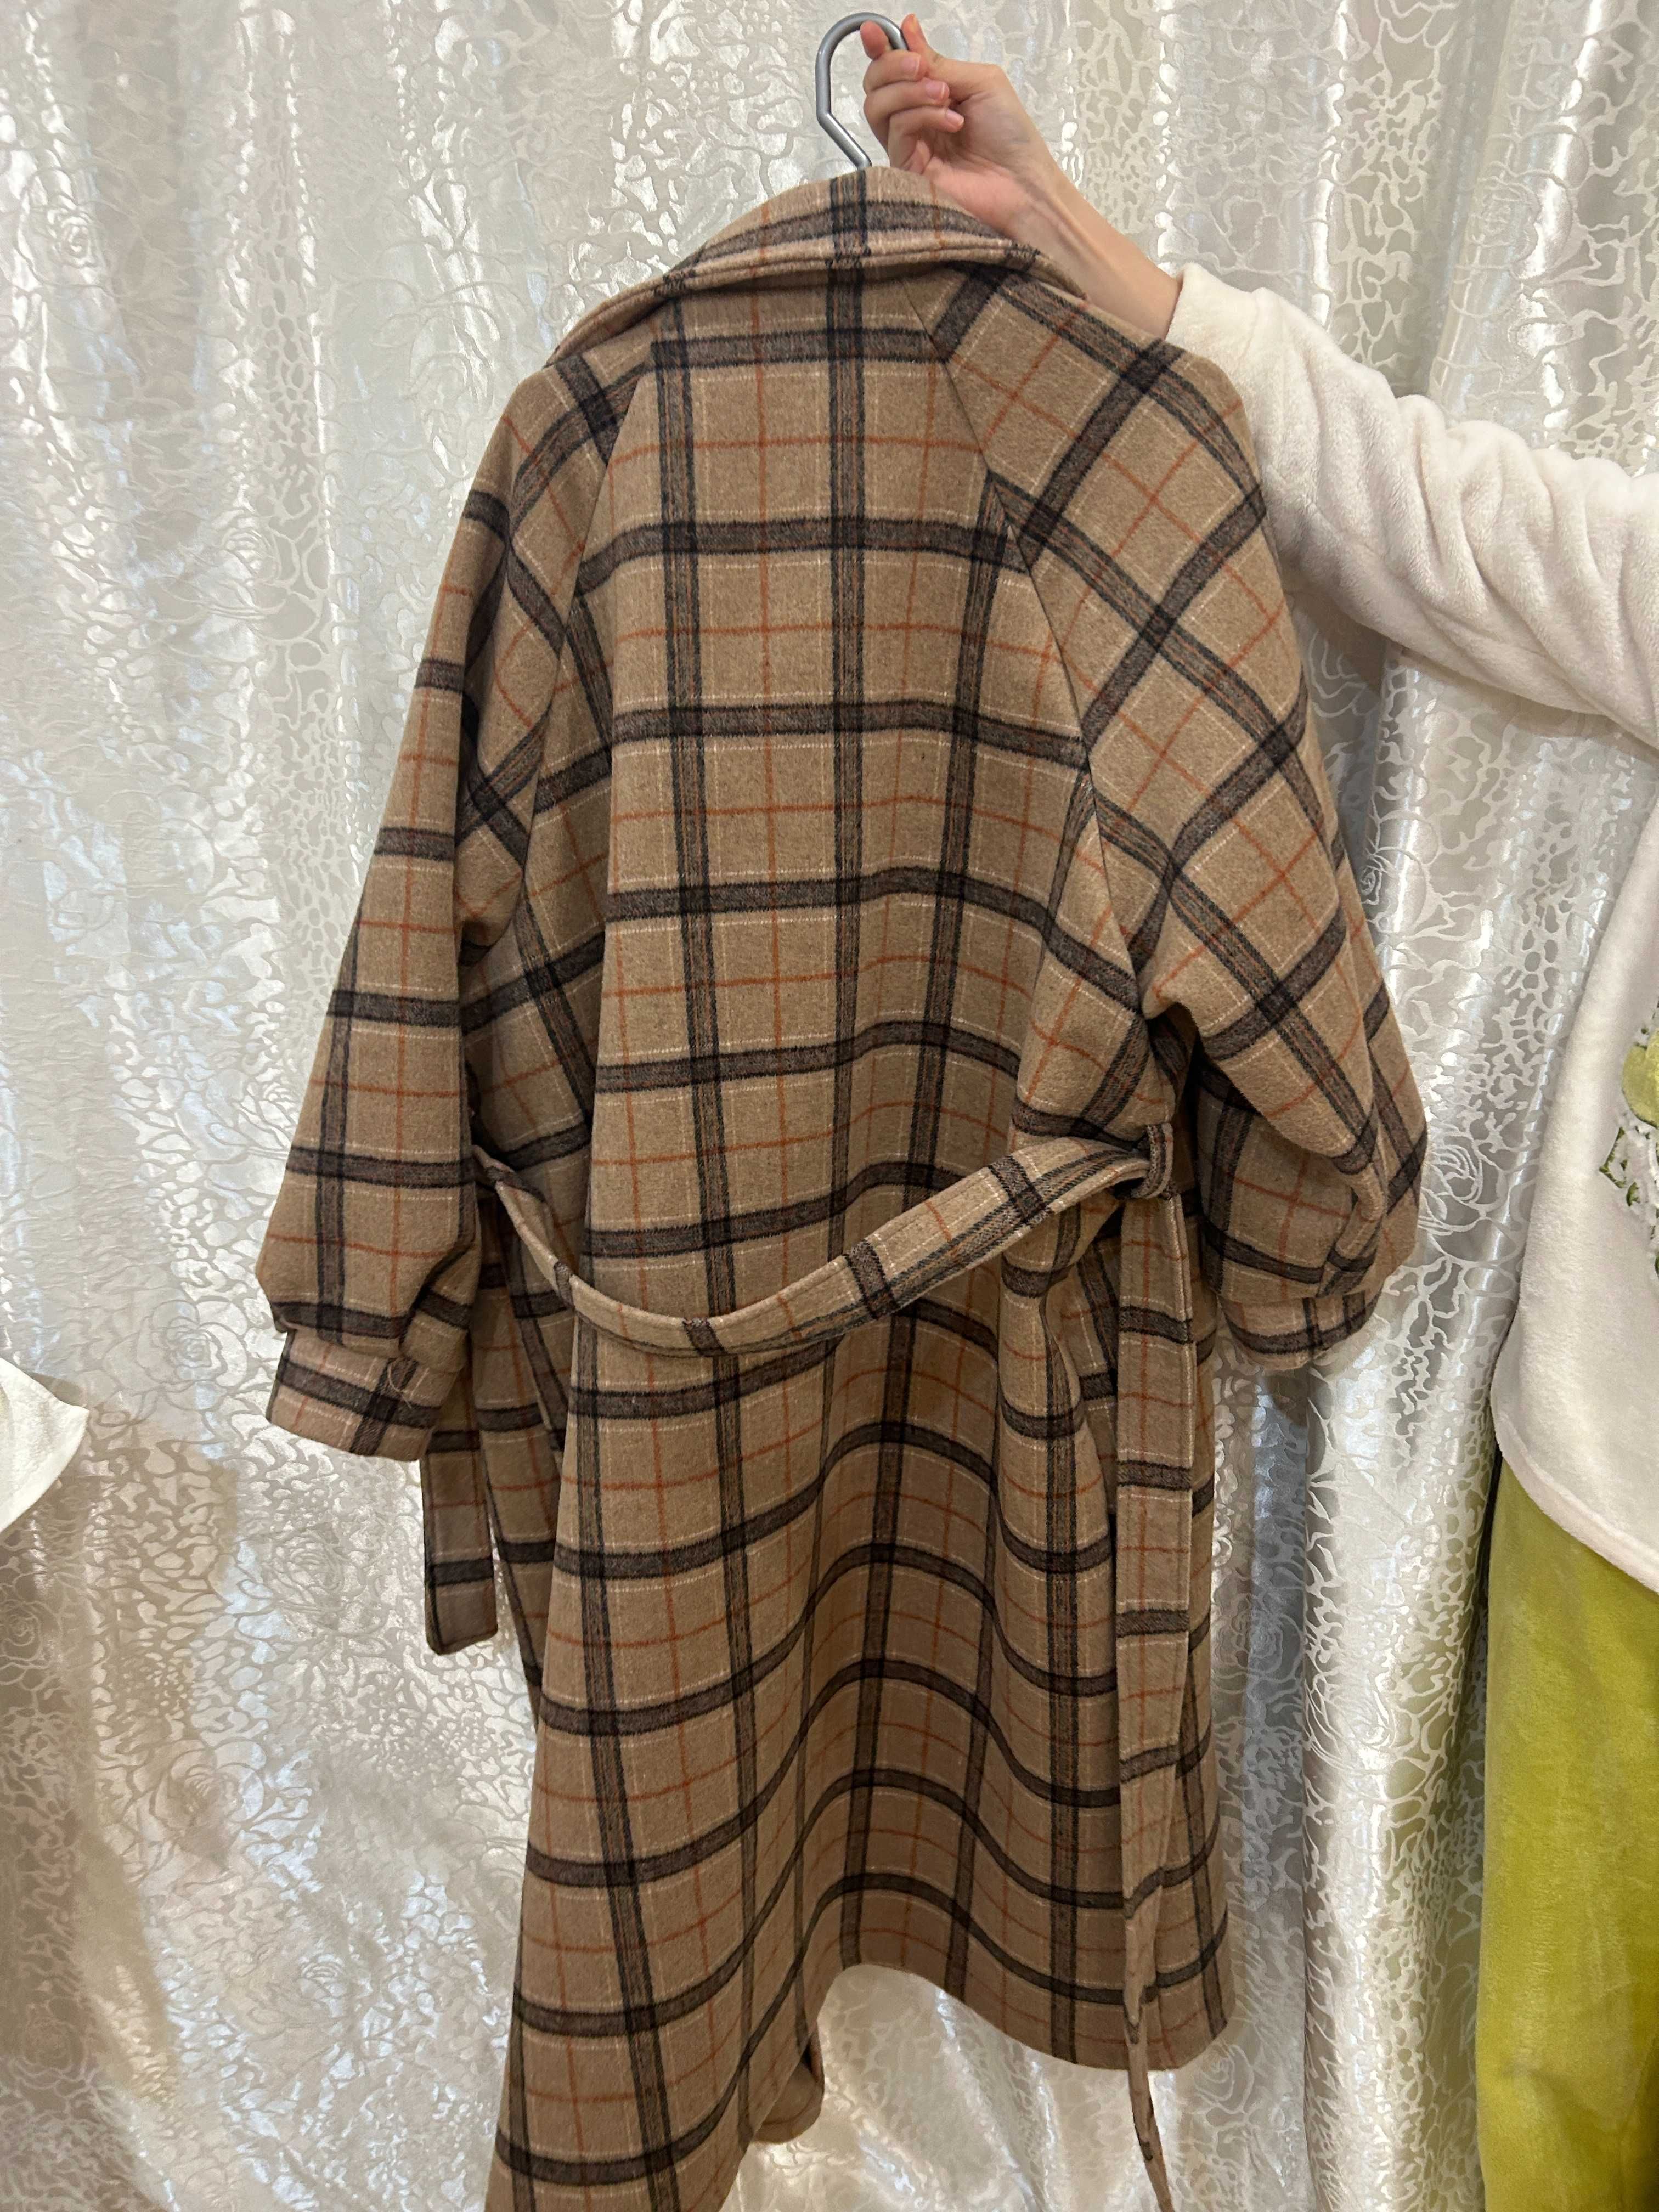 Женское пальто универсального размера, цвет хаки, производство Китай.